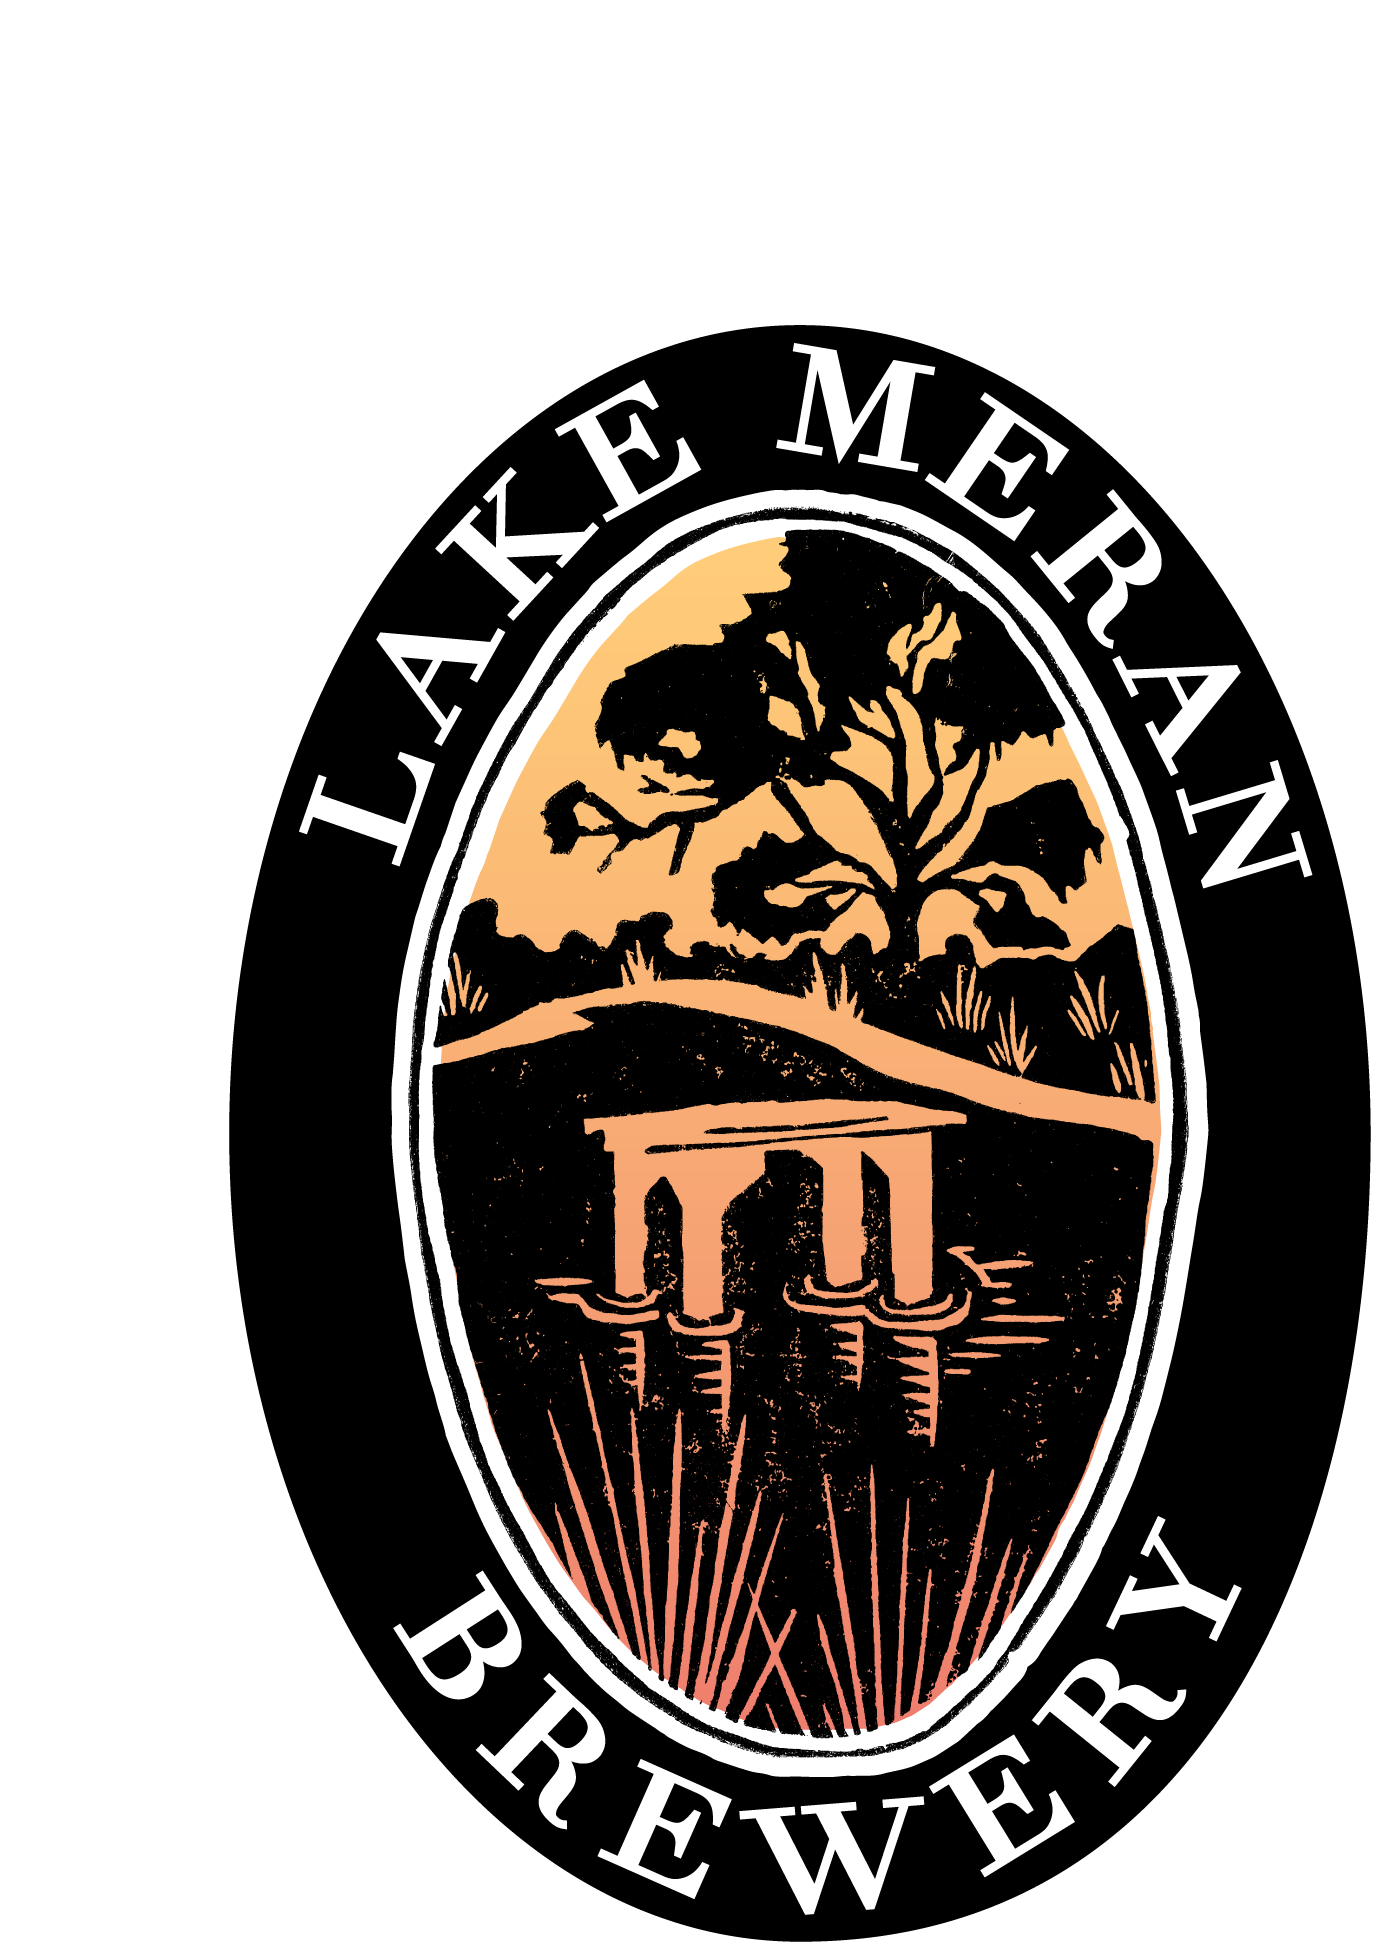 Lake Meran Brewery